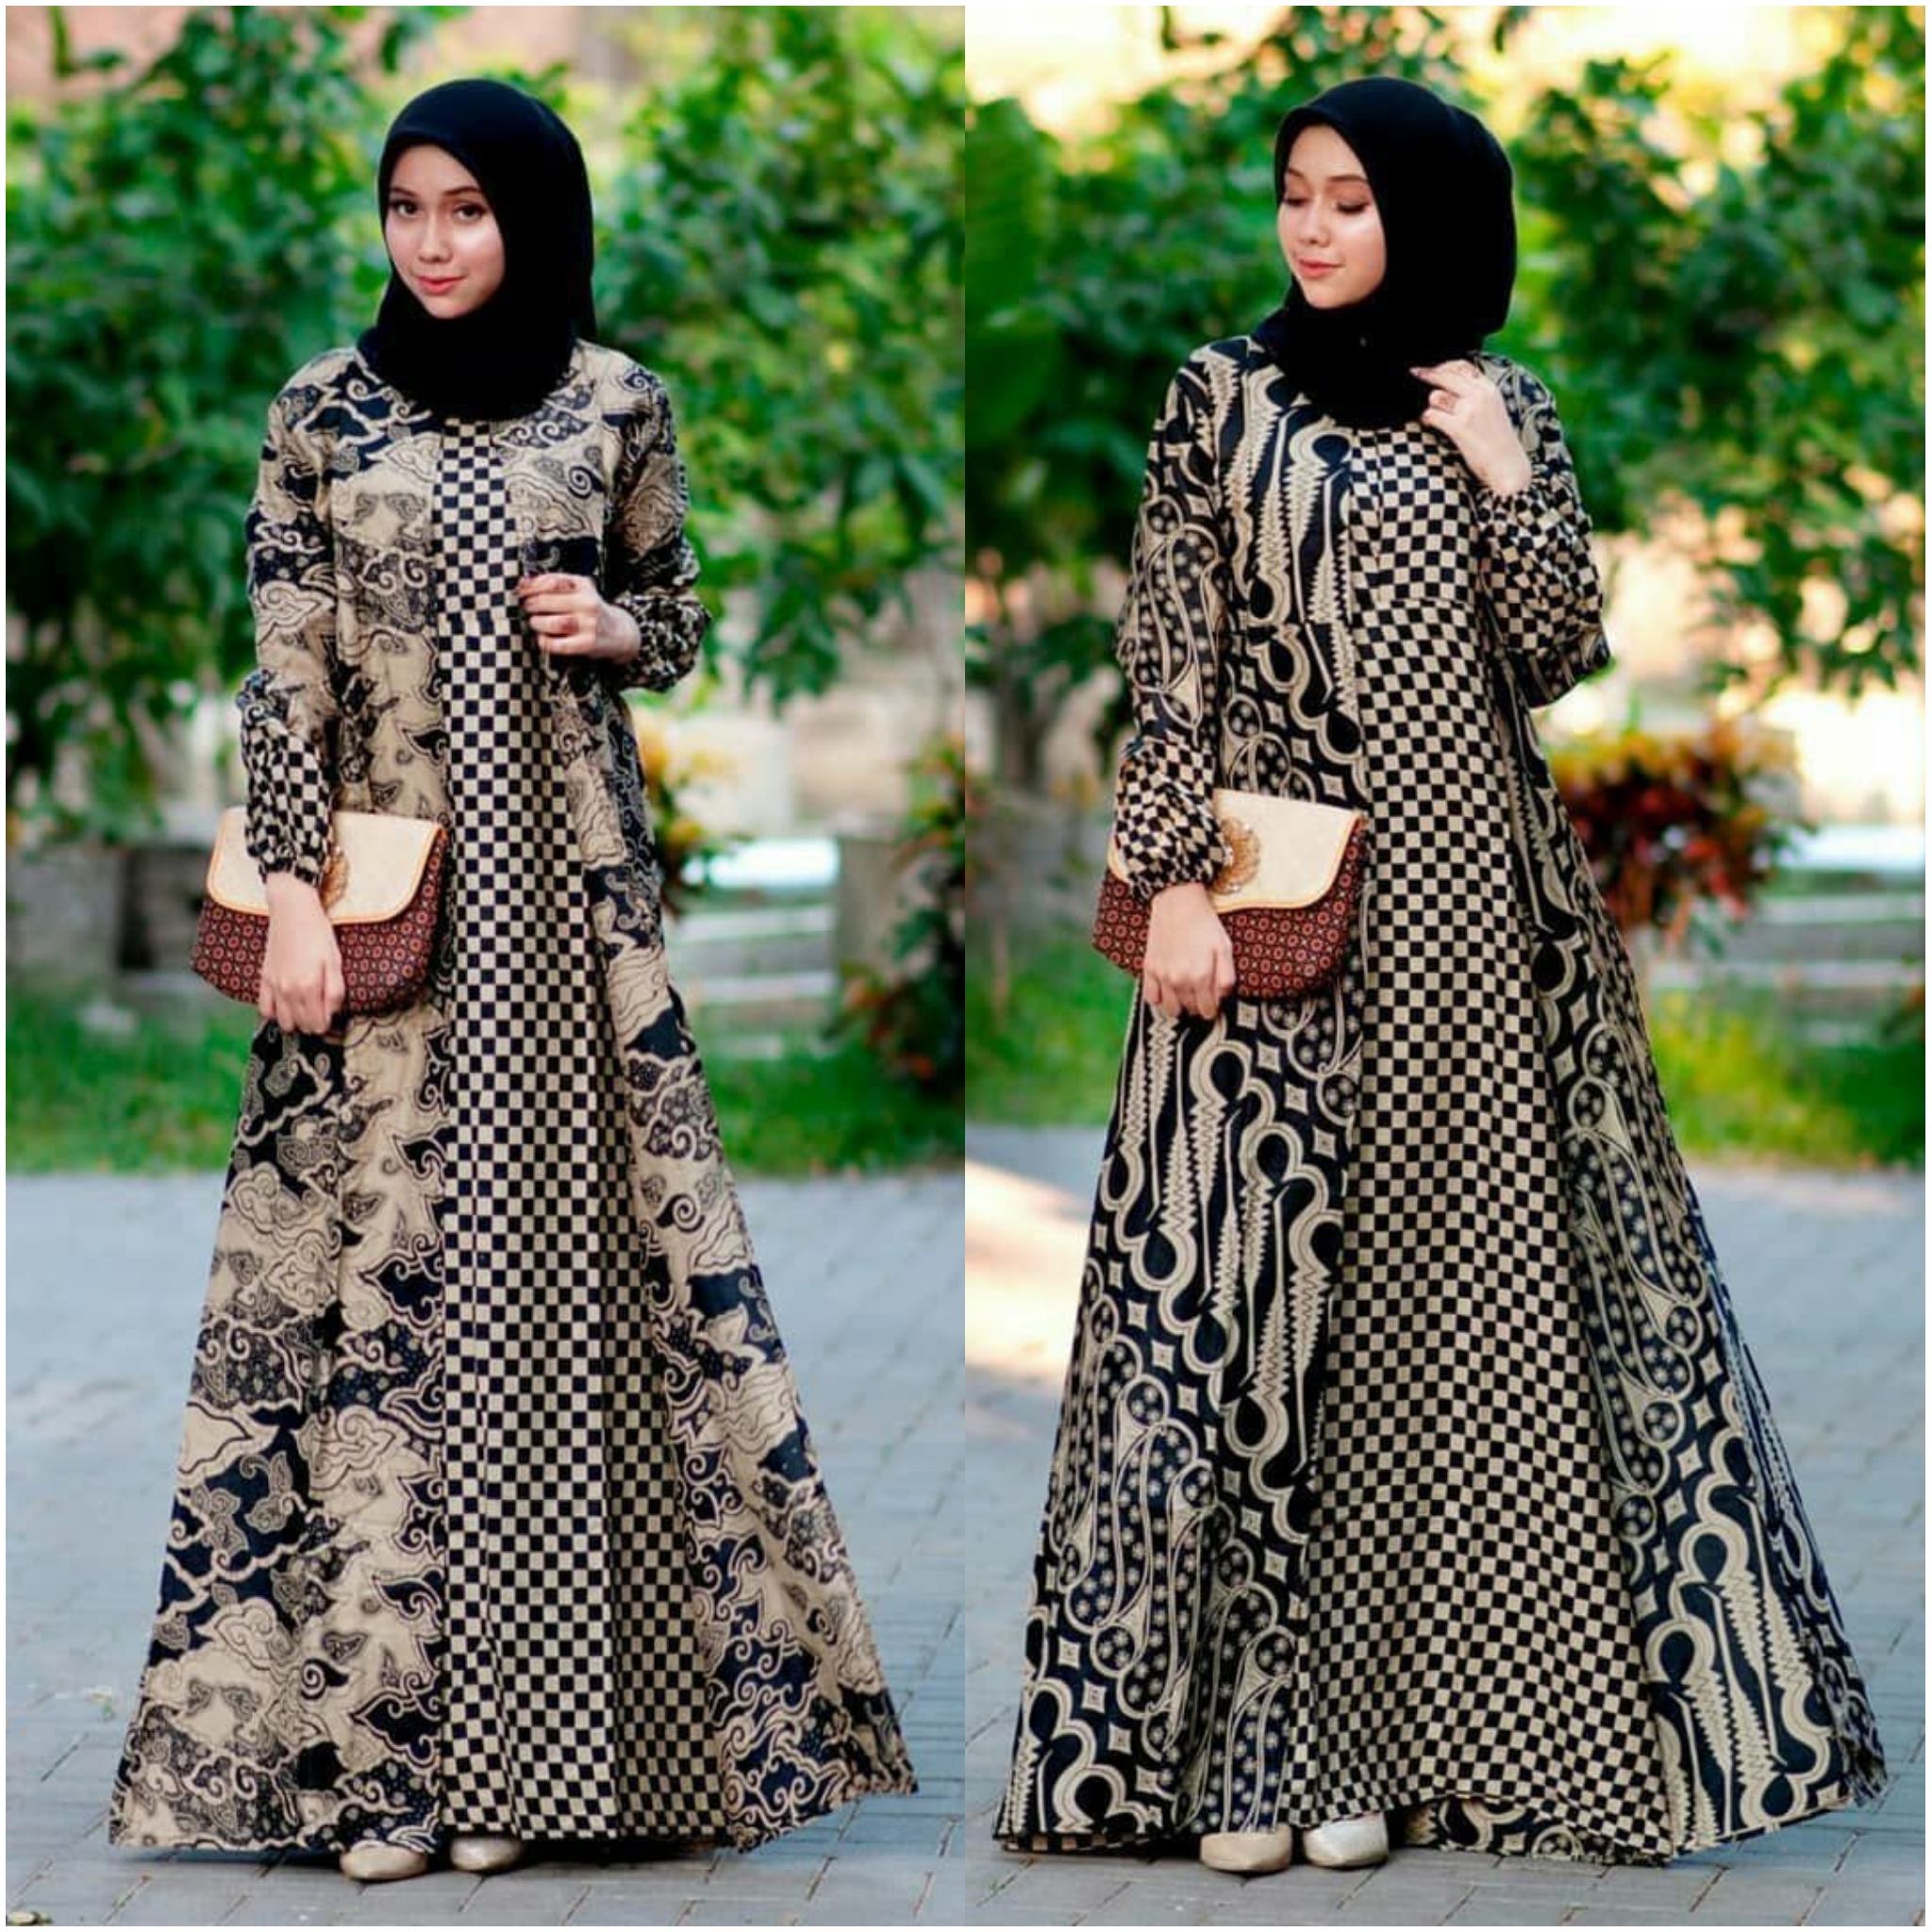 Gamis Batik 2821 Terbaru 2020 Best Seller Baju Muslim Busana Muslim Gamis Sabyan Gamis Batik Wanita Ld 110 Busui Lazada Indonesia